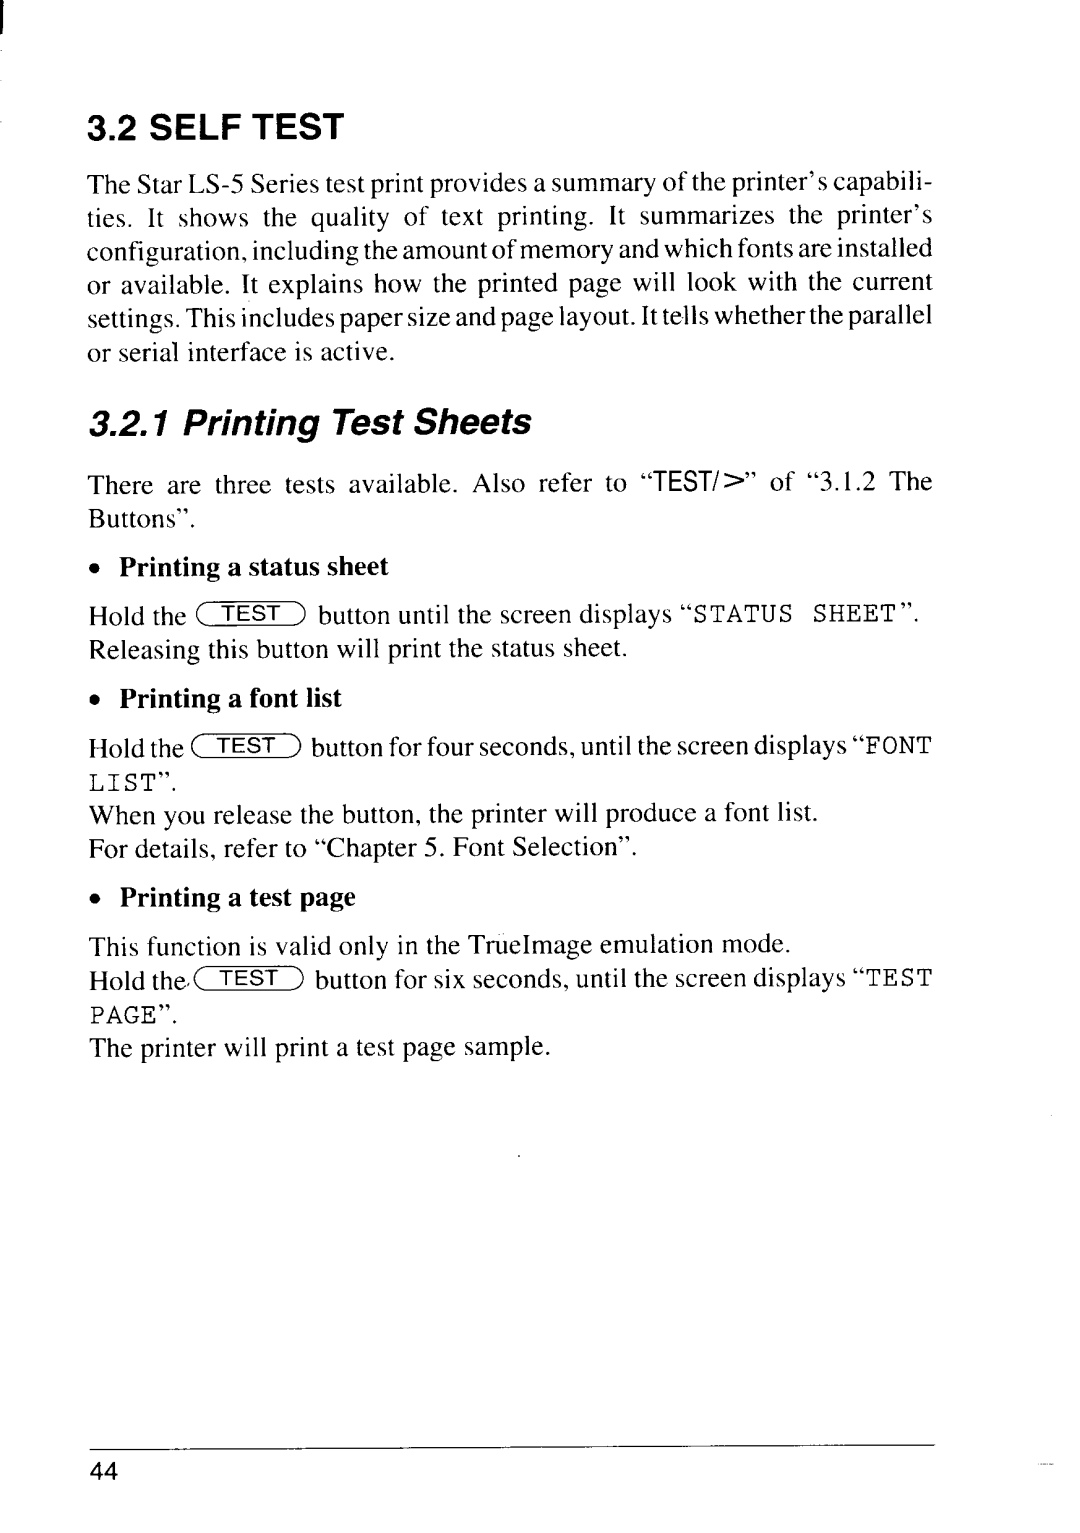 Star Micronics LS-5 EX, LS-5 TT operation manual Self Test, Printing Test Sheets 